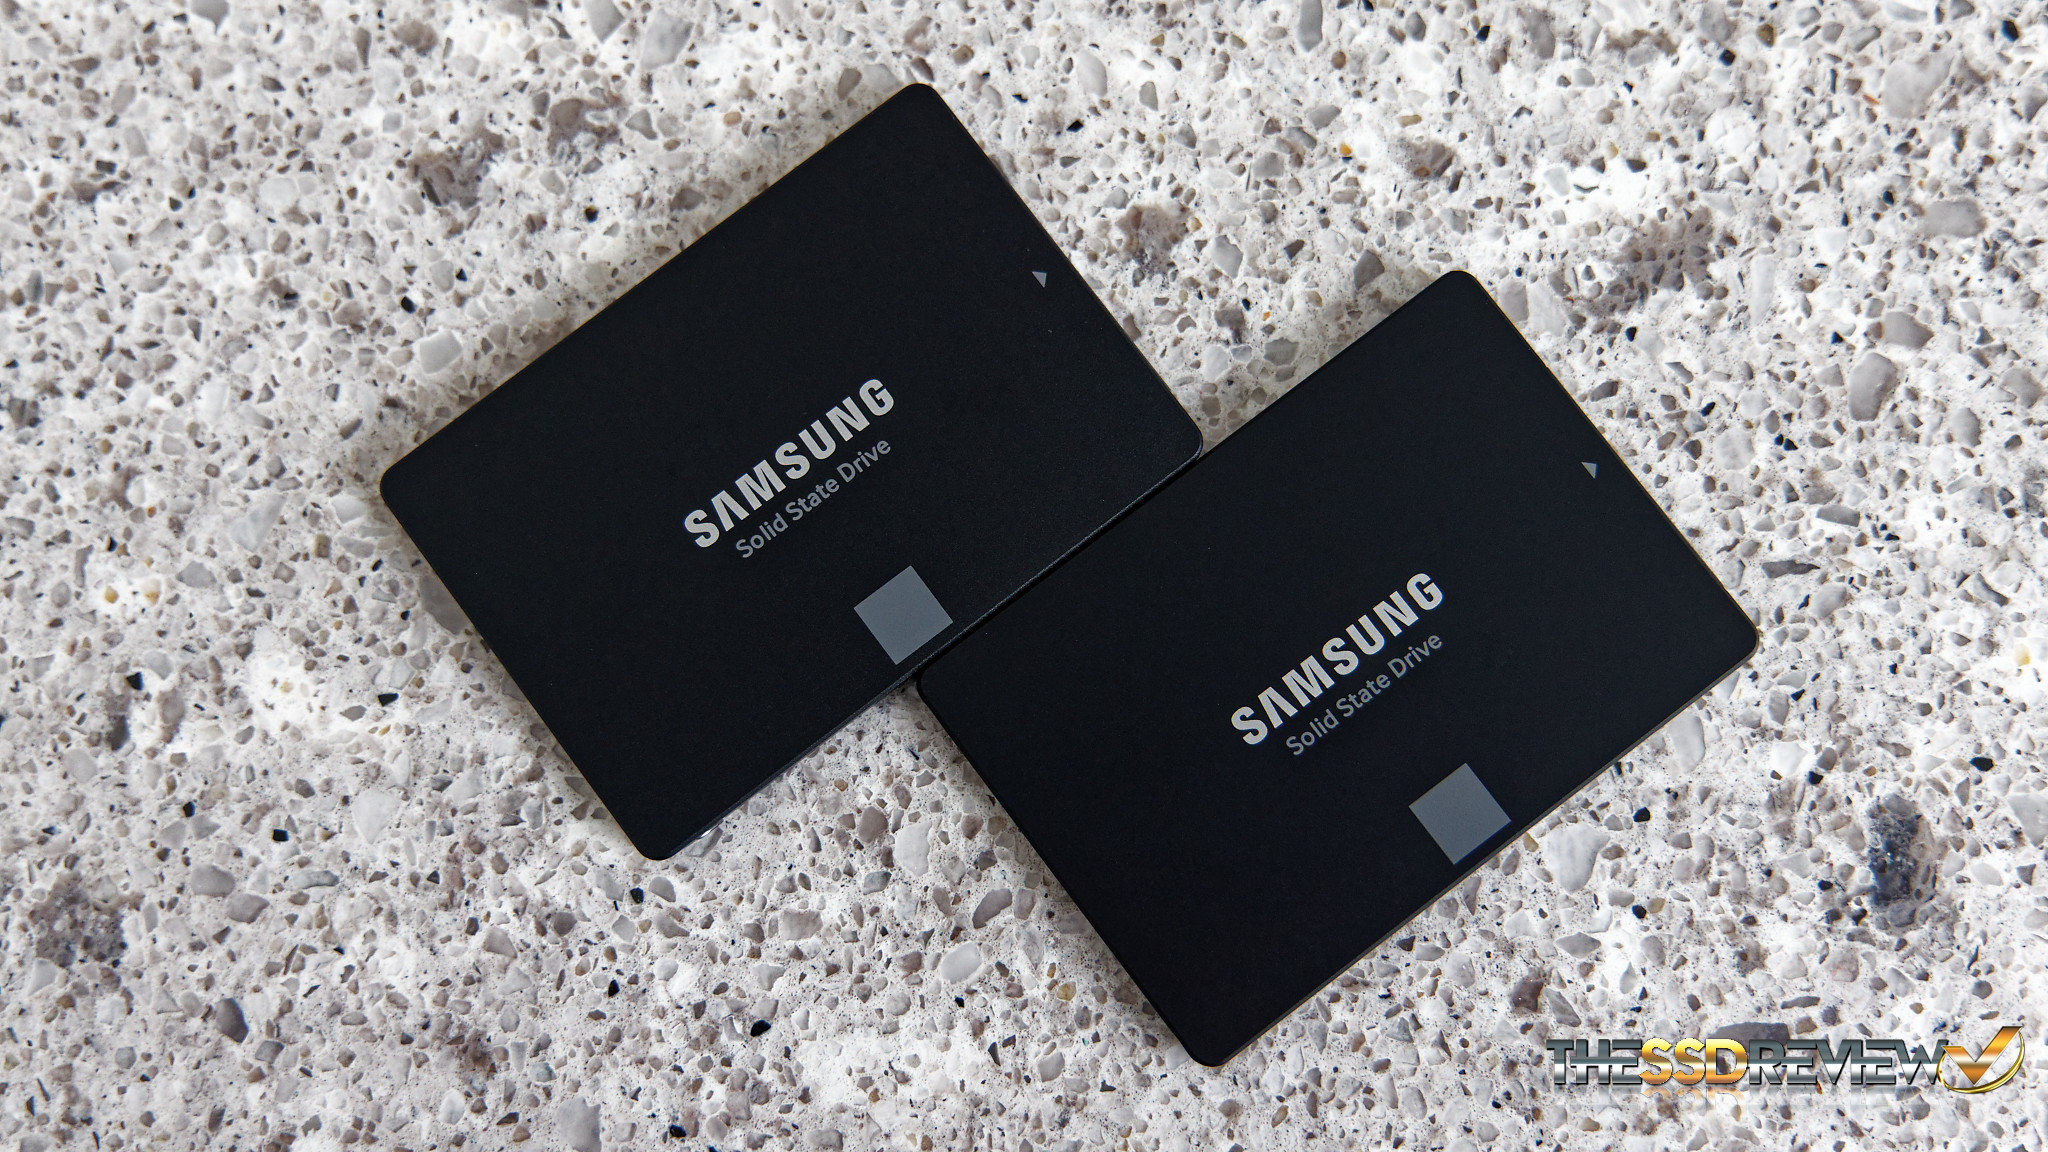 Samsung 870 Evo SSD Review